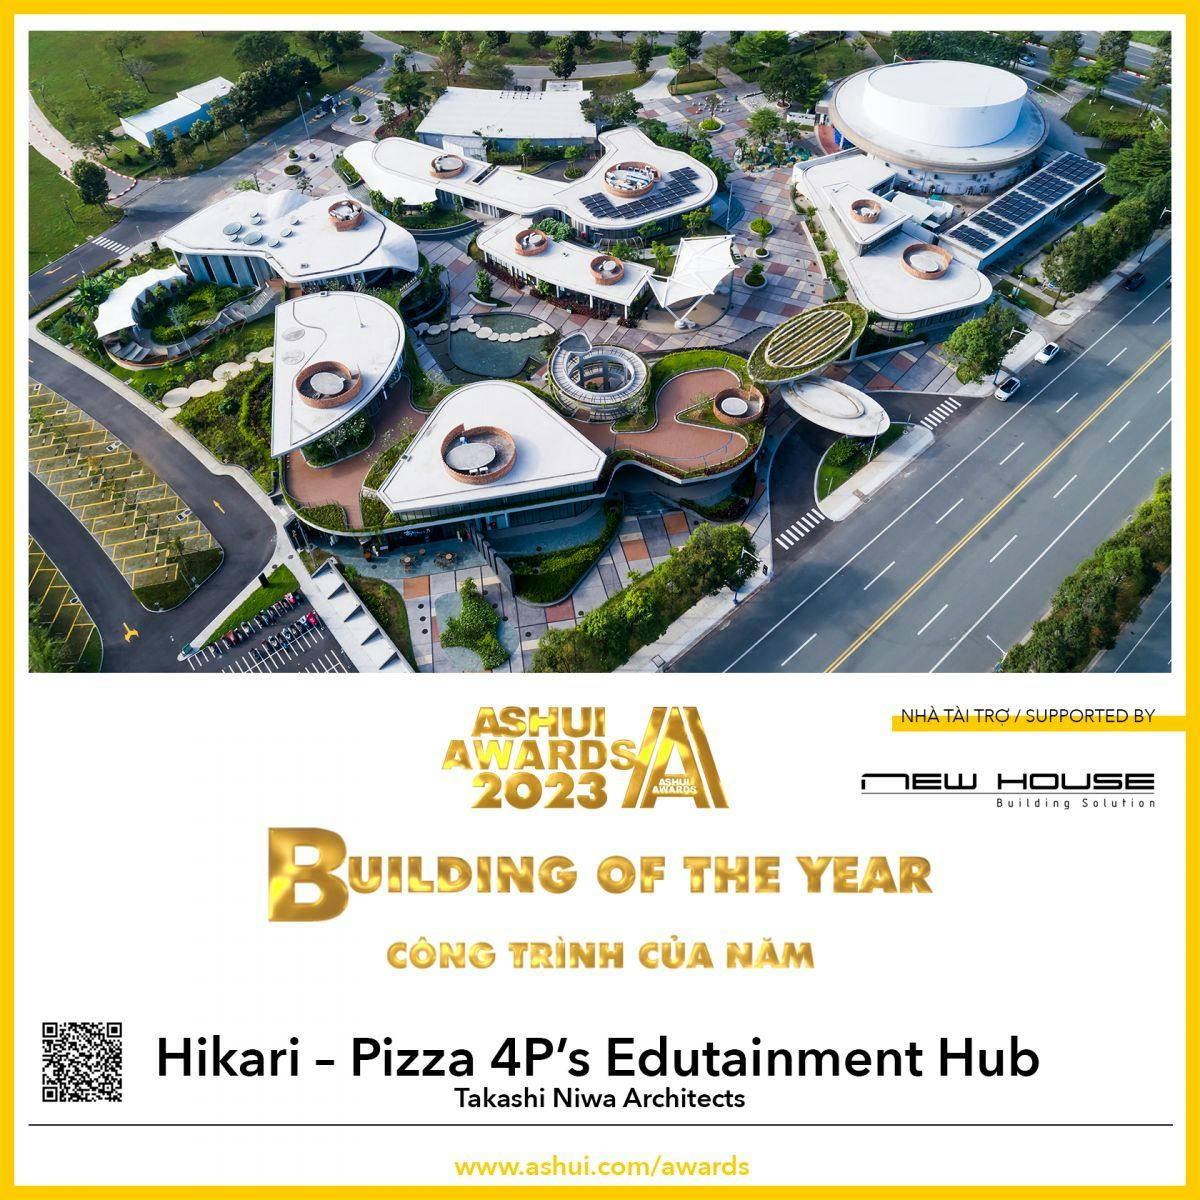 Tổ hợp giáo dục giải trí Hikari - 4P’s nhận được danh hiệu “Công trình của năm 2023” của Ashui Awards 2023!